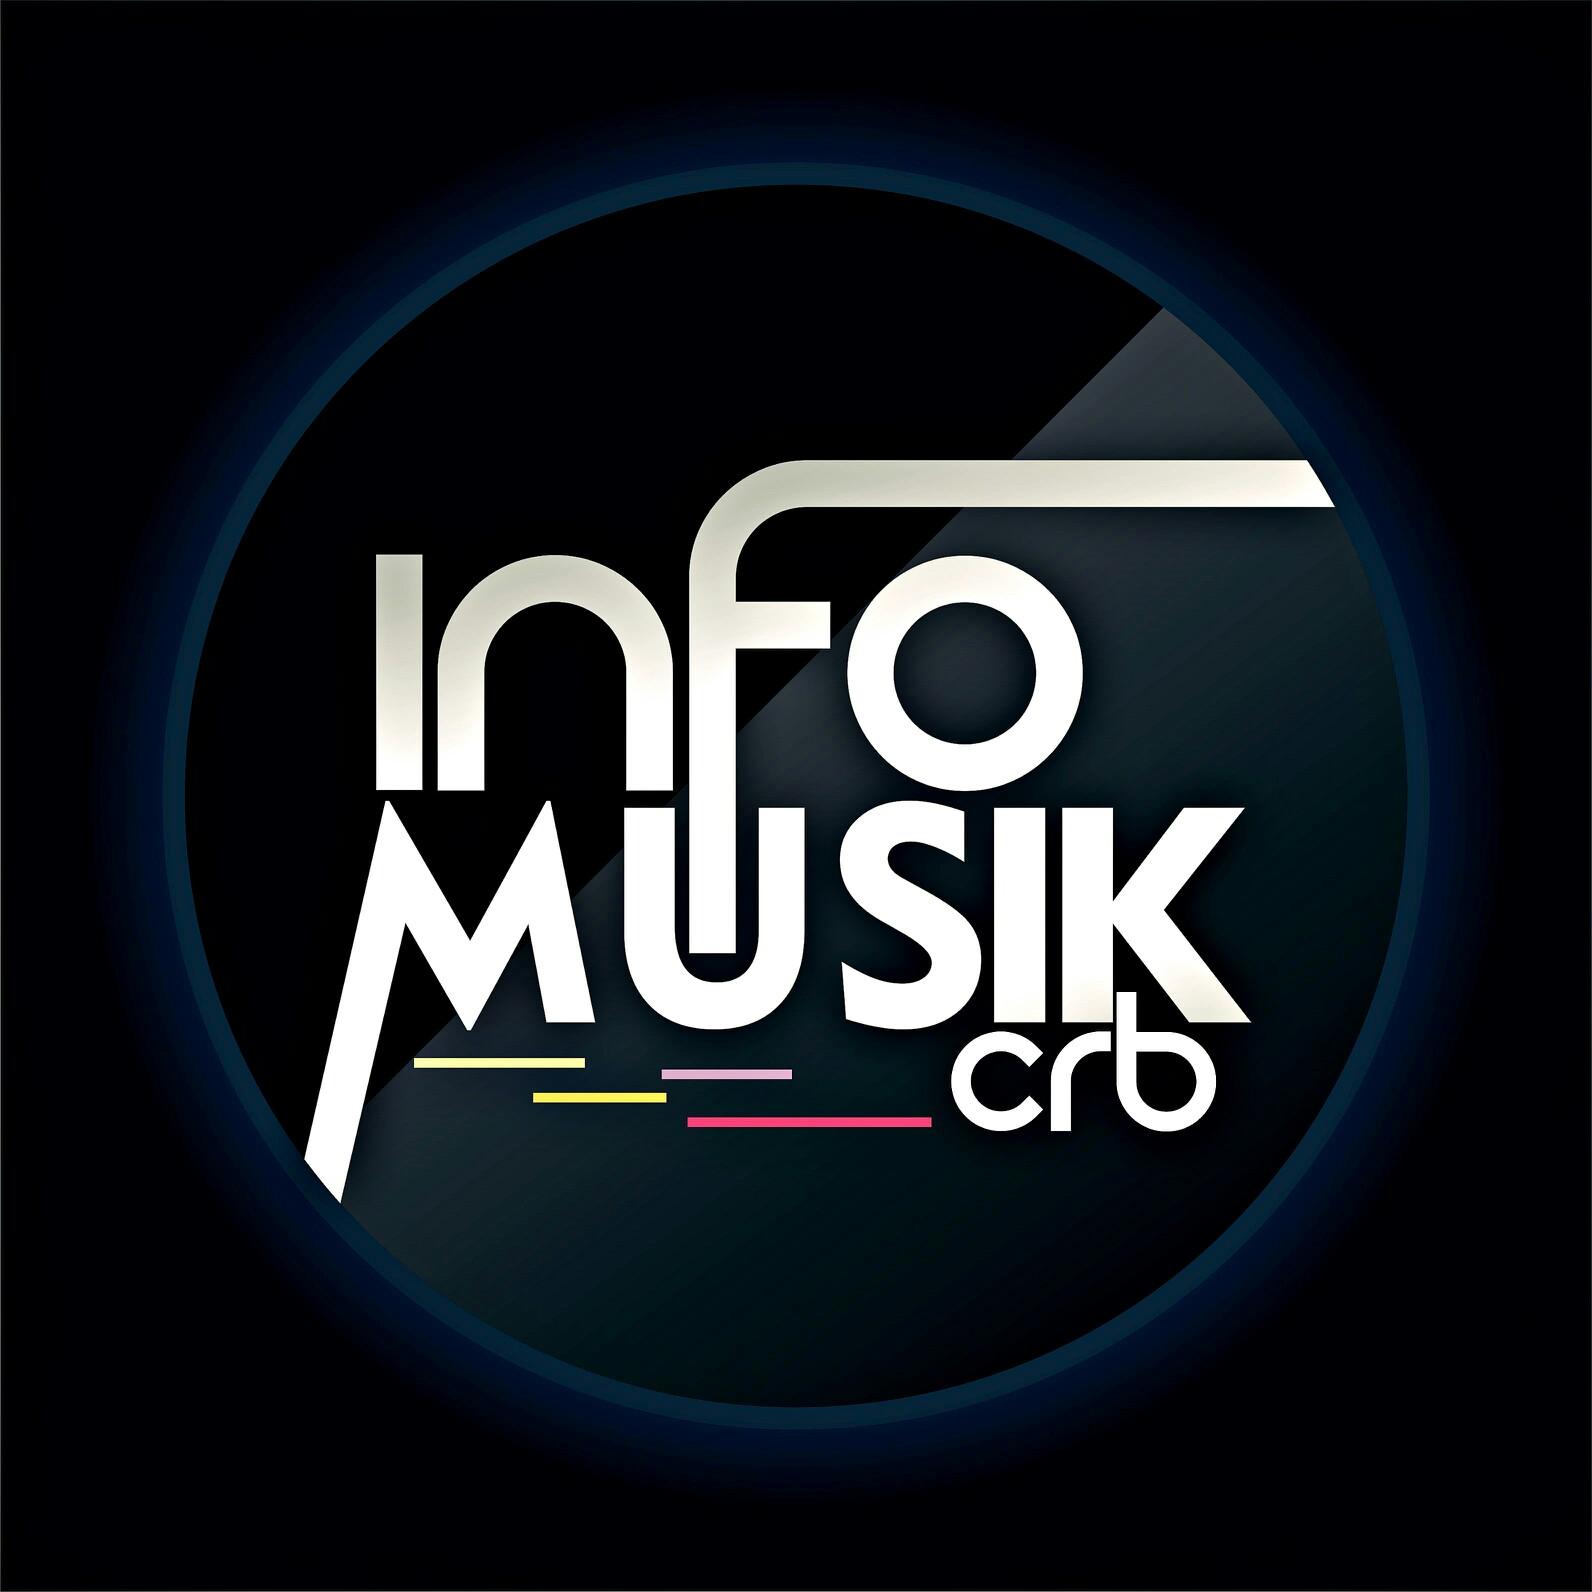 INFO MUSIK (indie, nasional & manca) PERTAMA WILAYAH 3 CIREBON.
Instagram: infomusikcrb